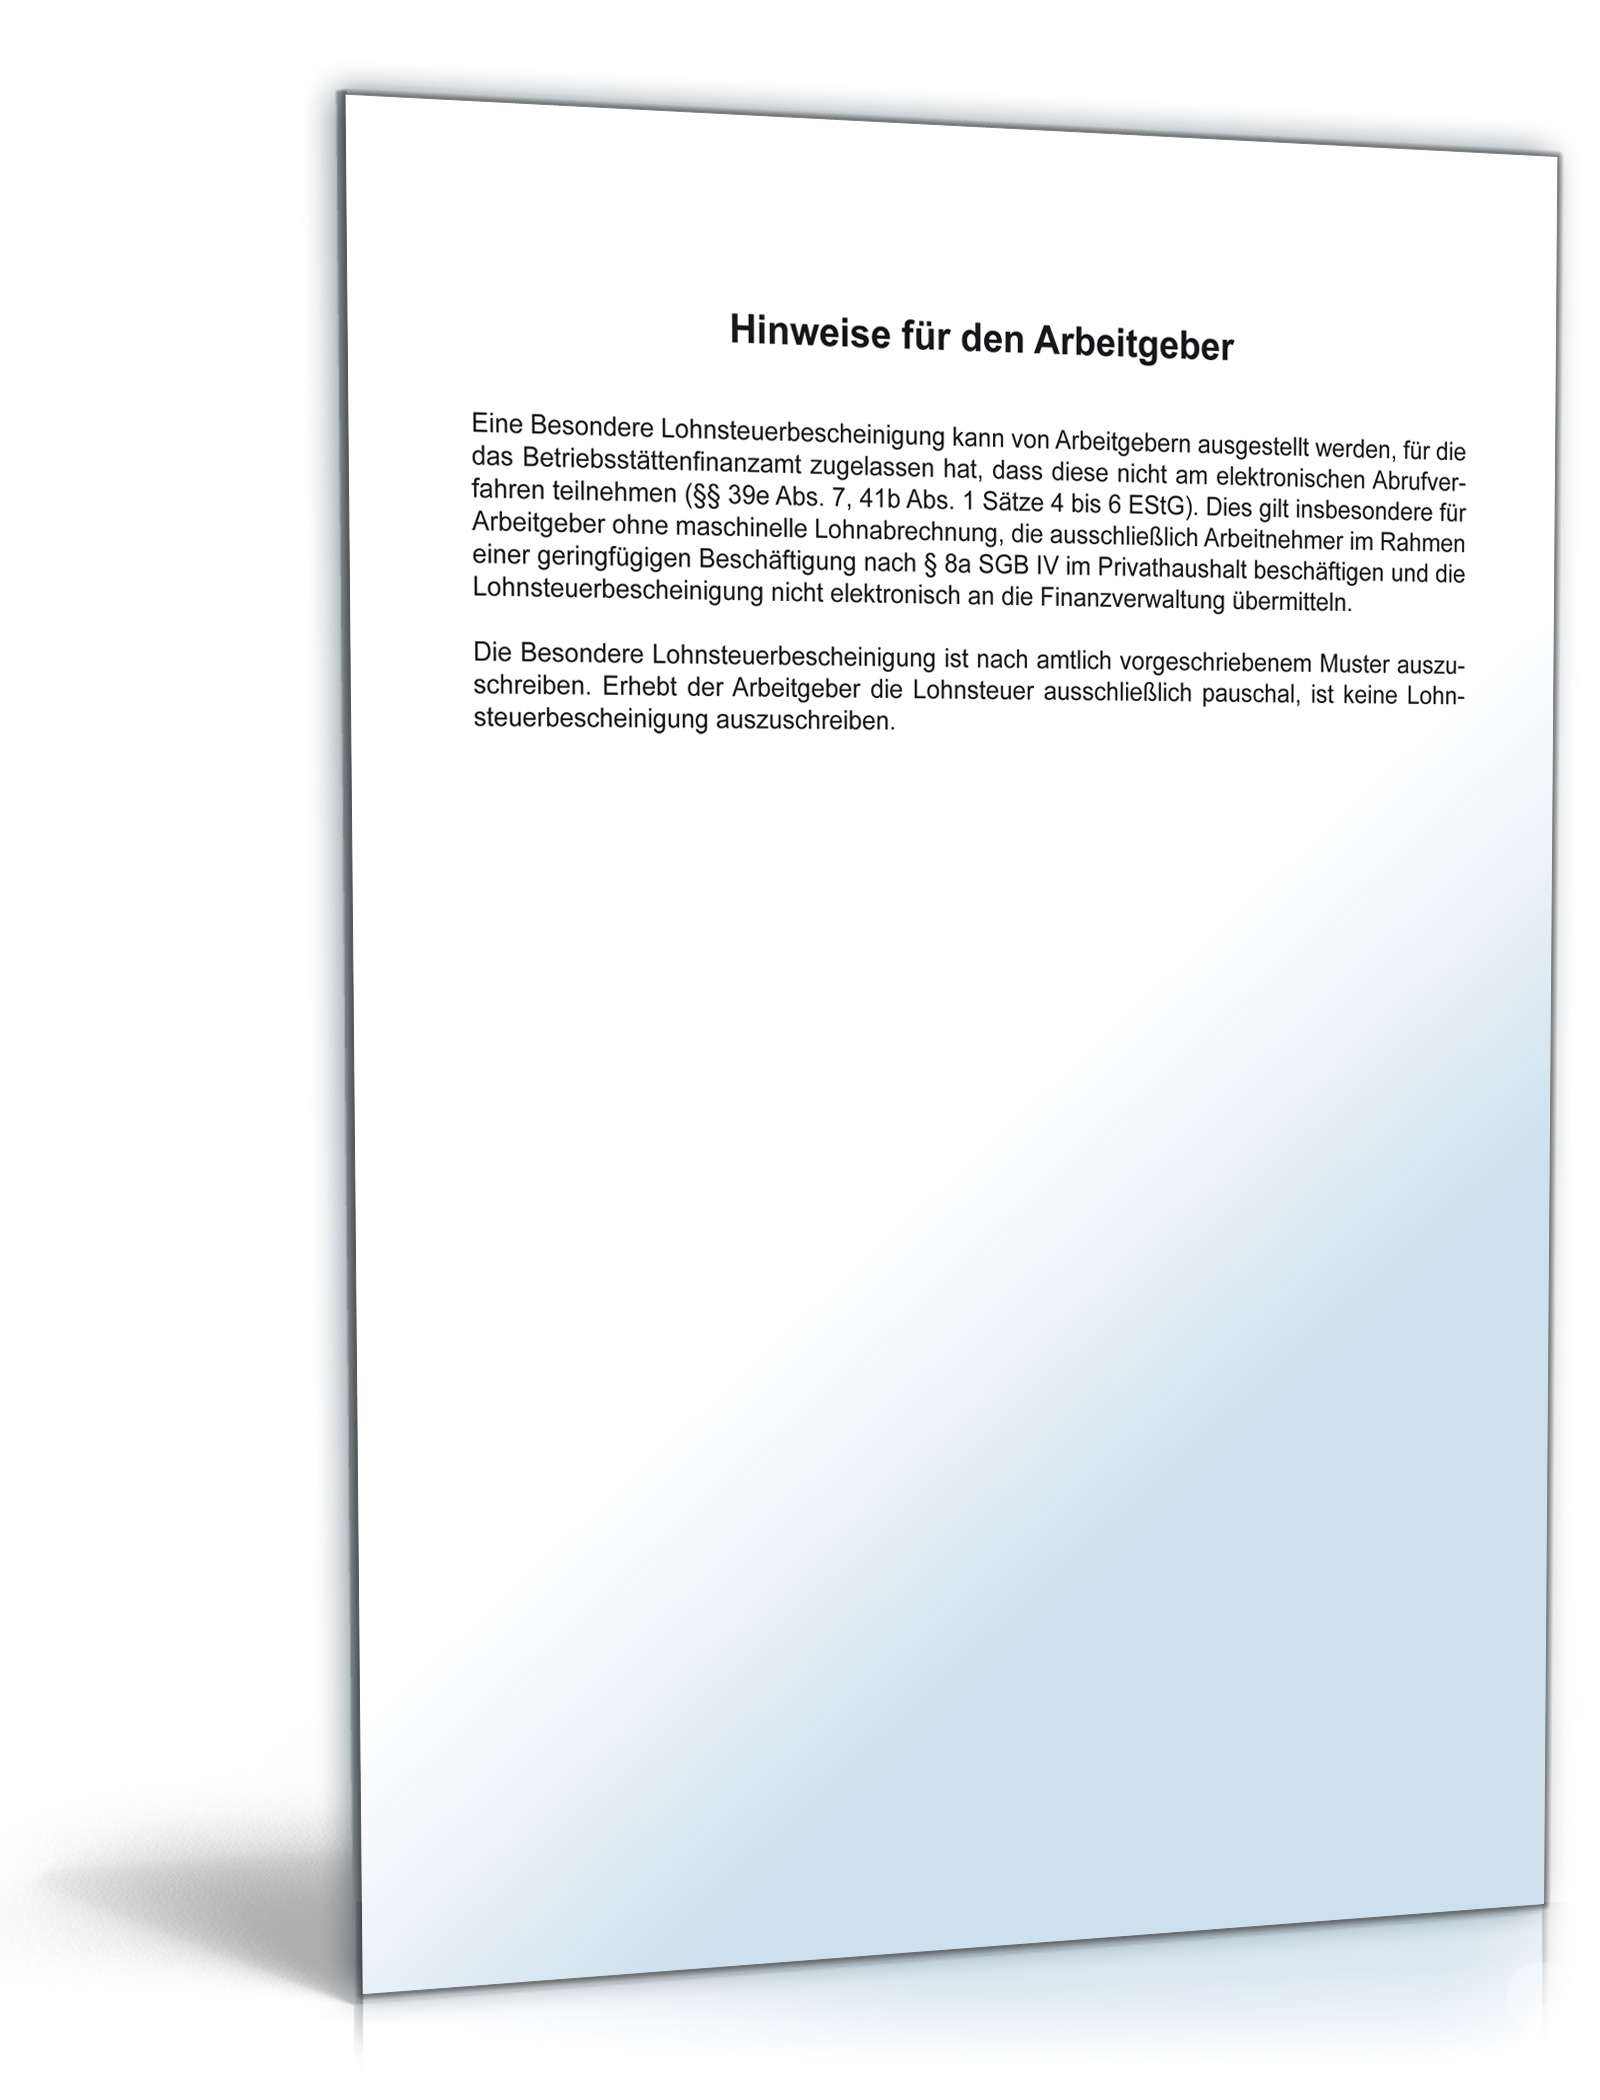 Besondere Lohnsteuerbescheinigung 2012 Formular Zum Download